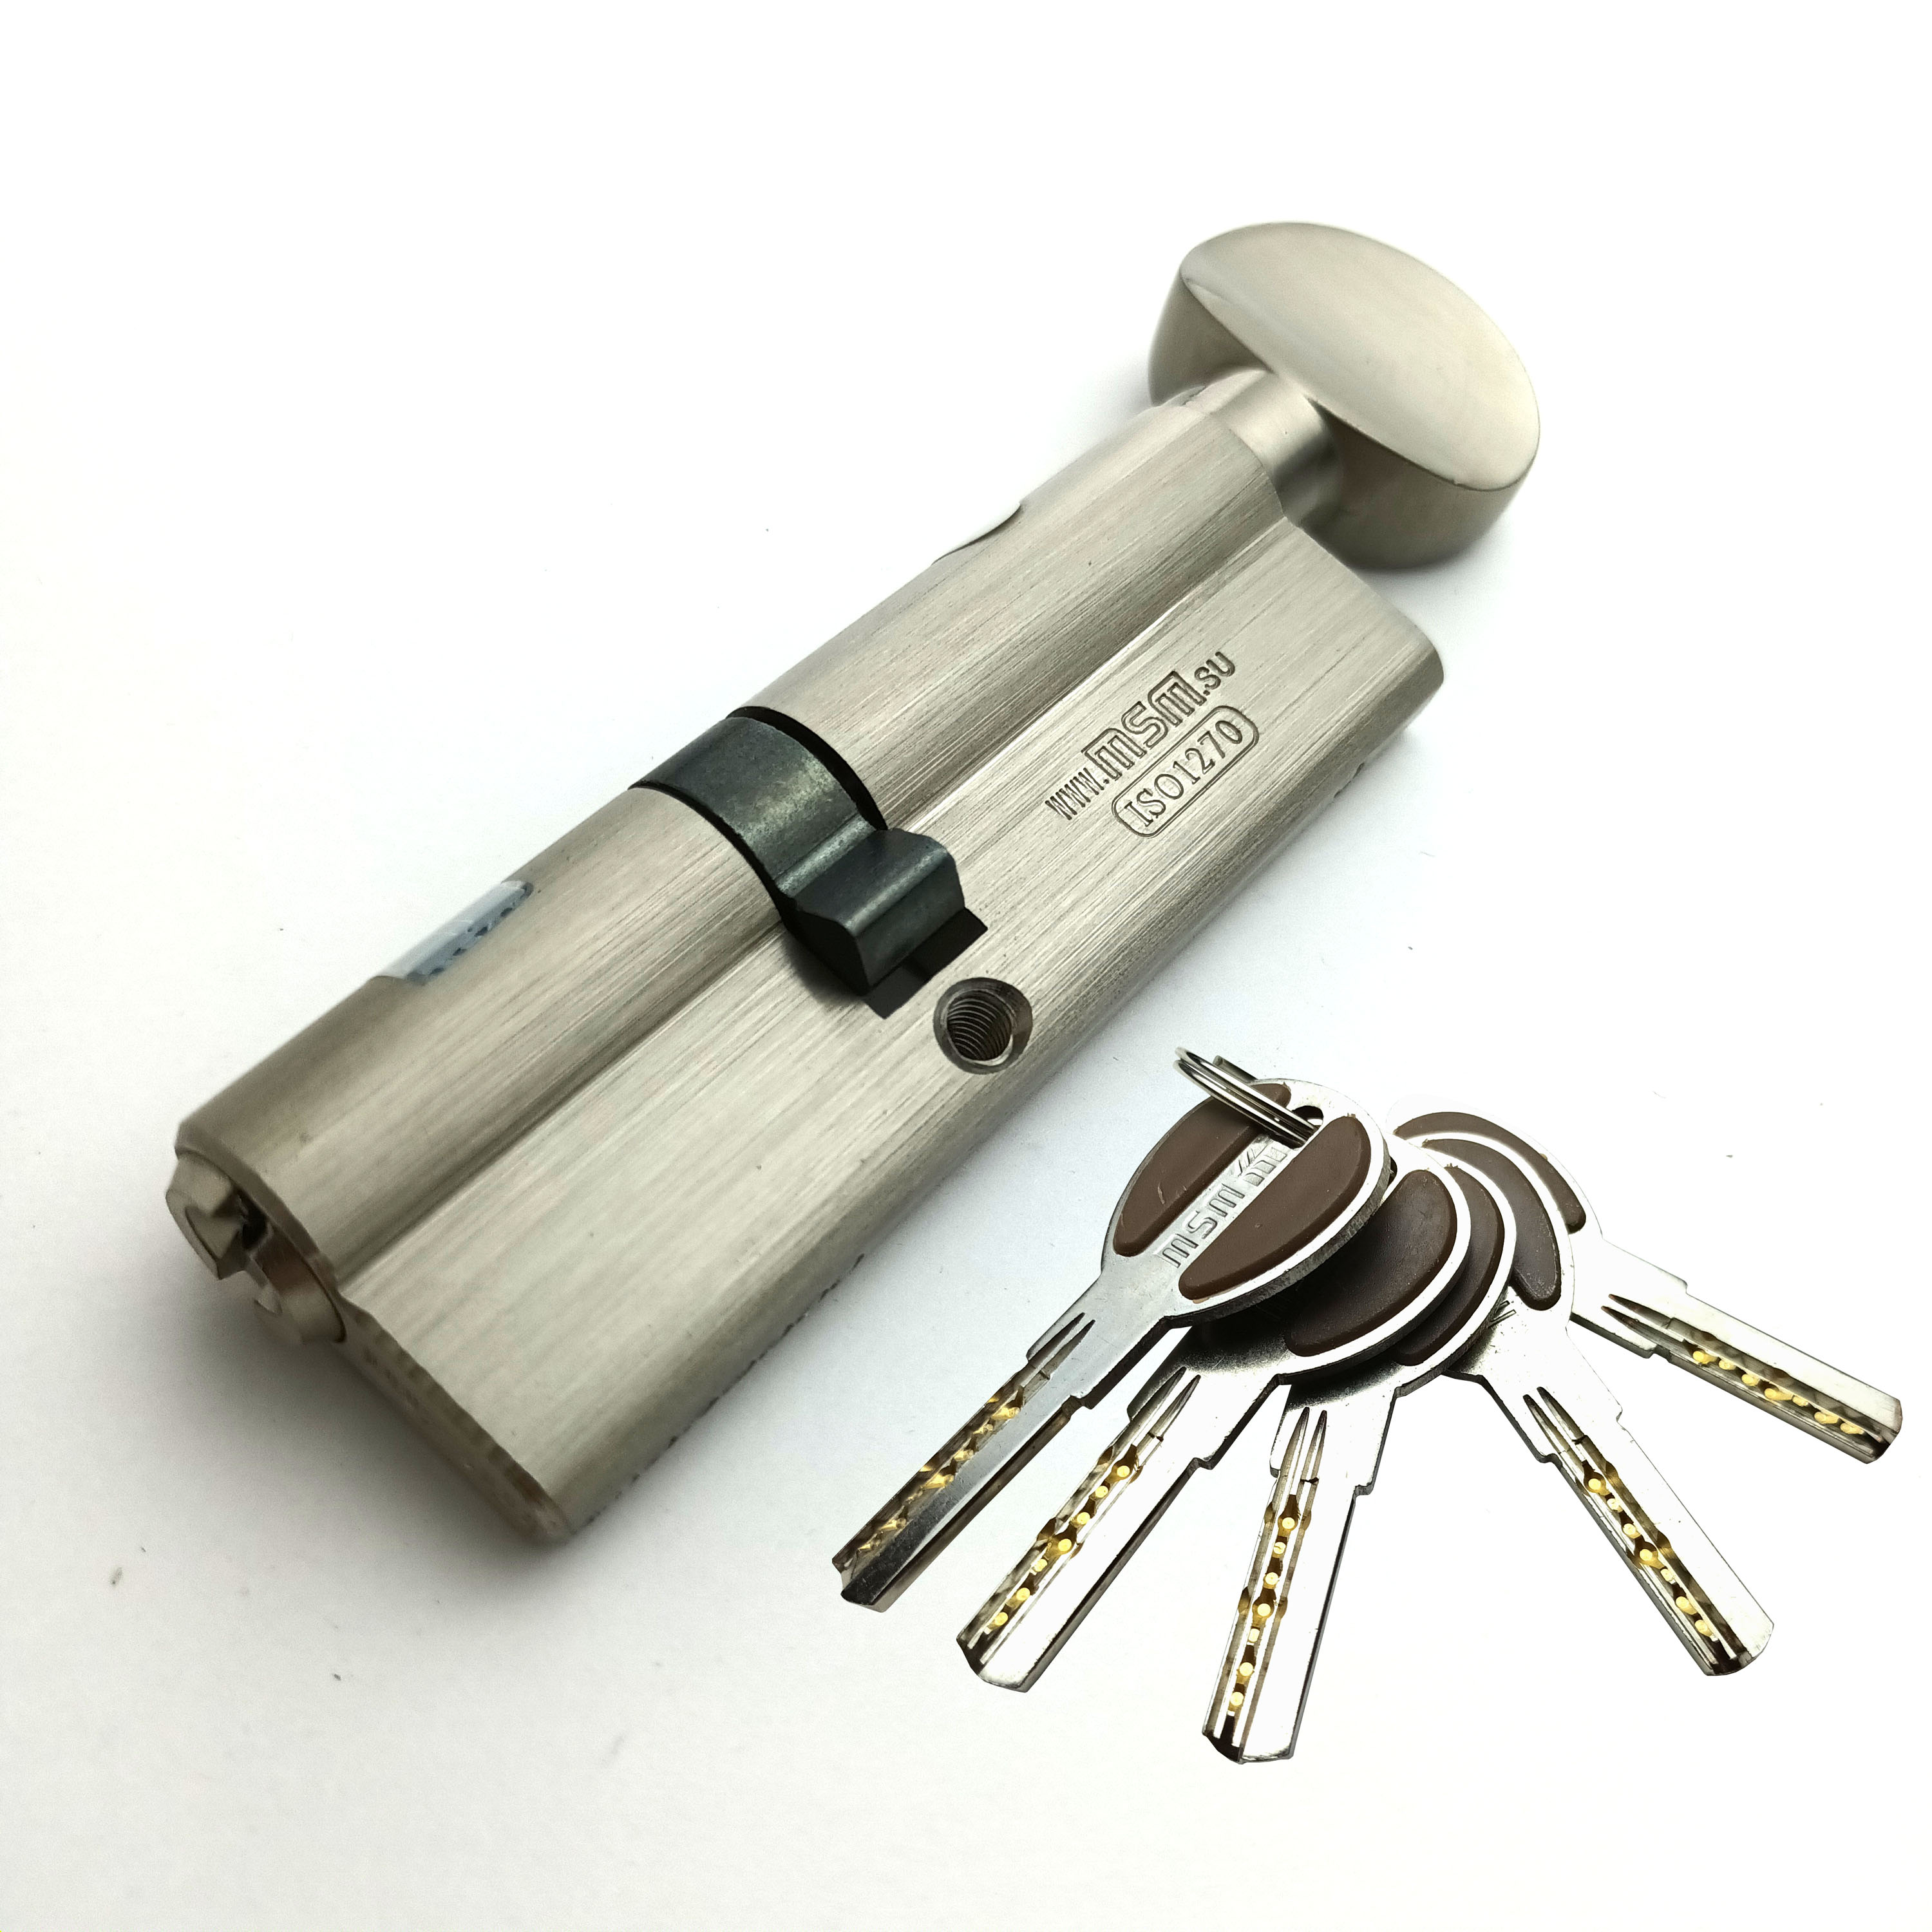 Цилиндровый механизм (Личинка замка) MSM 90 мм (50-40) ключ-вертушка, матовый никель цилиндровый механизм 90 мм с вертушкой перфор ключ 5 ключей золото